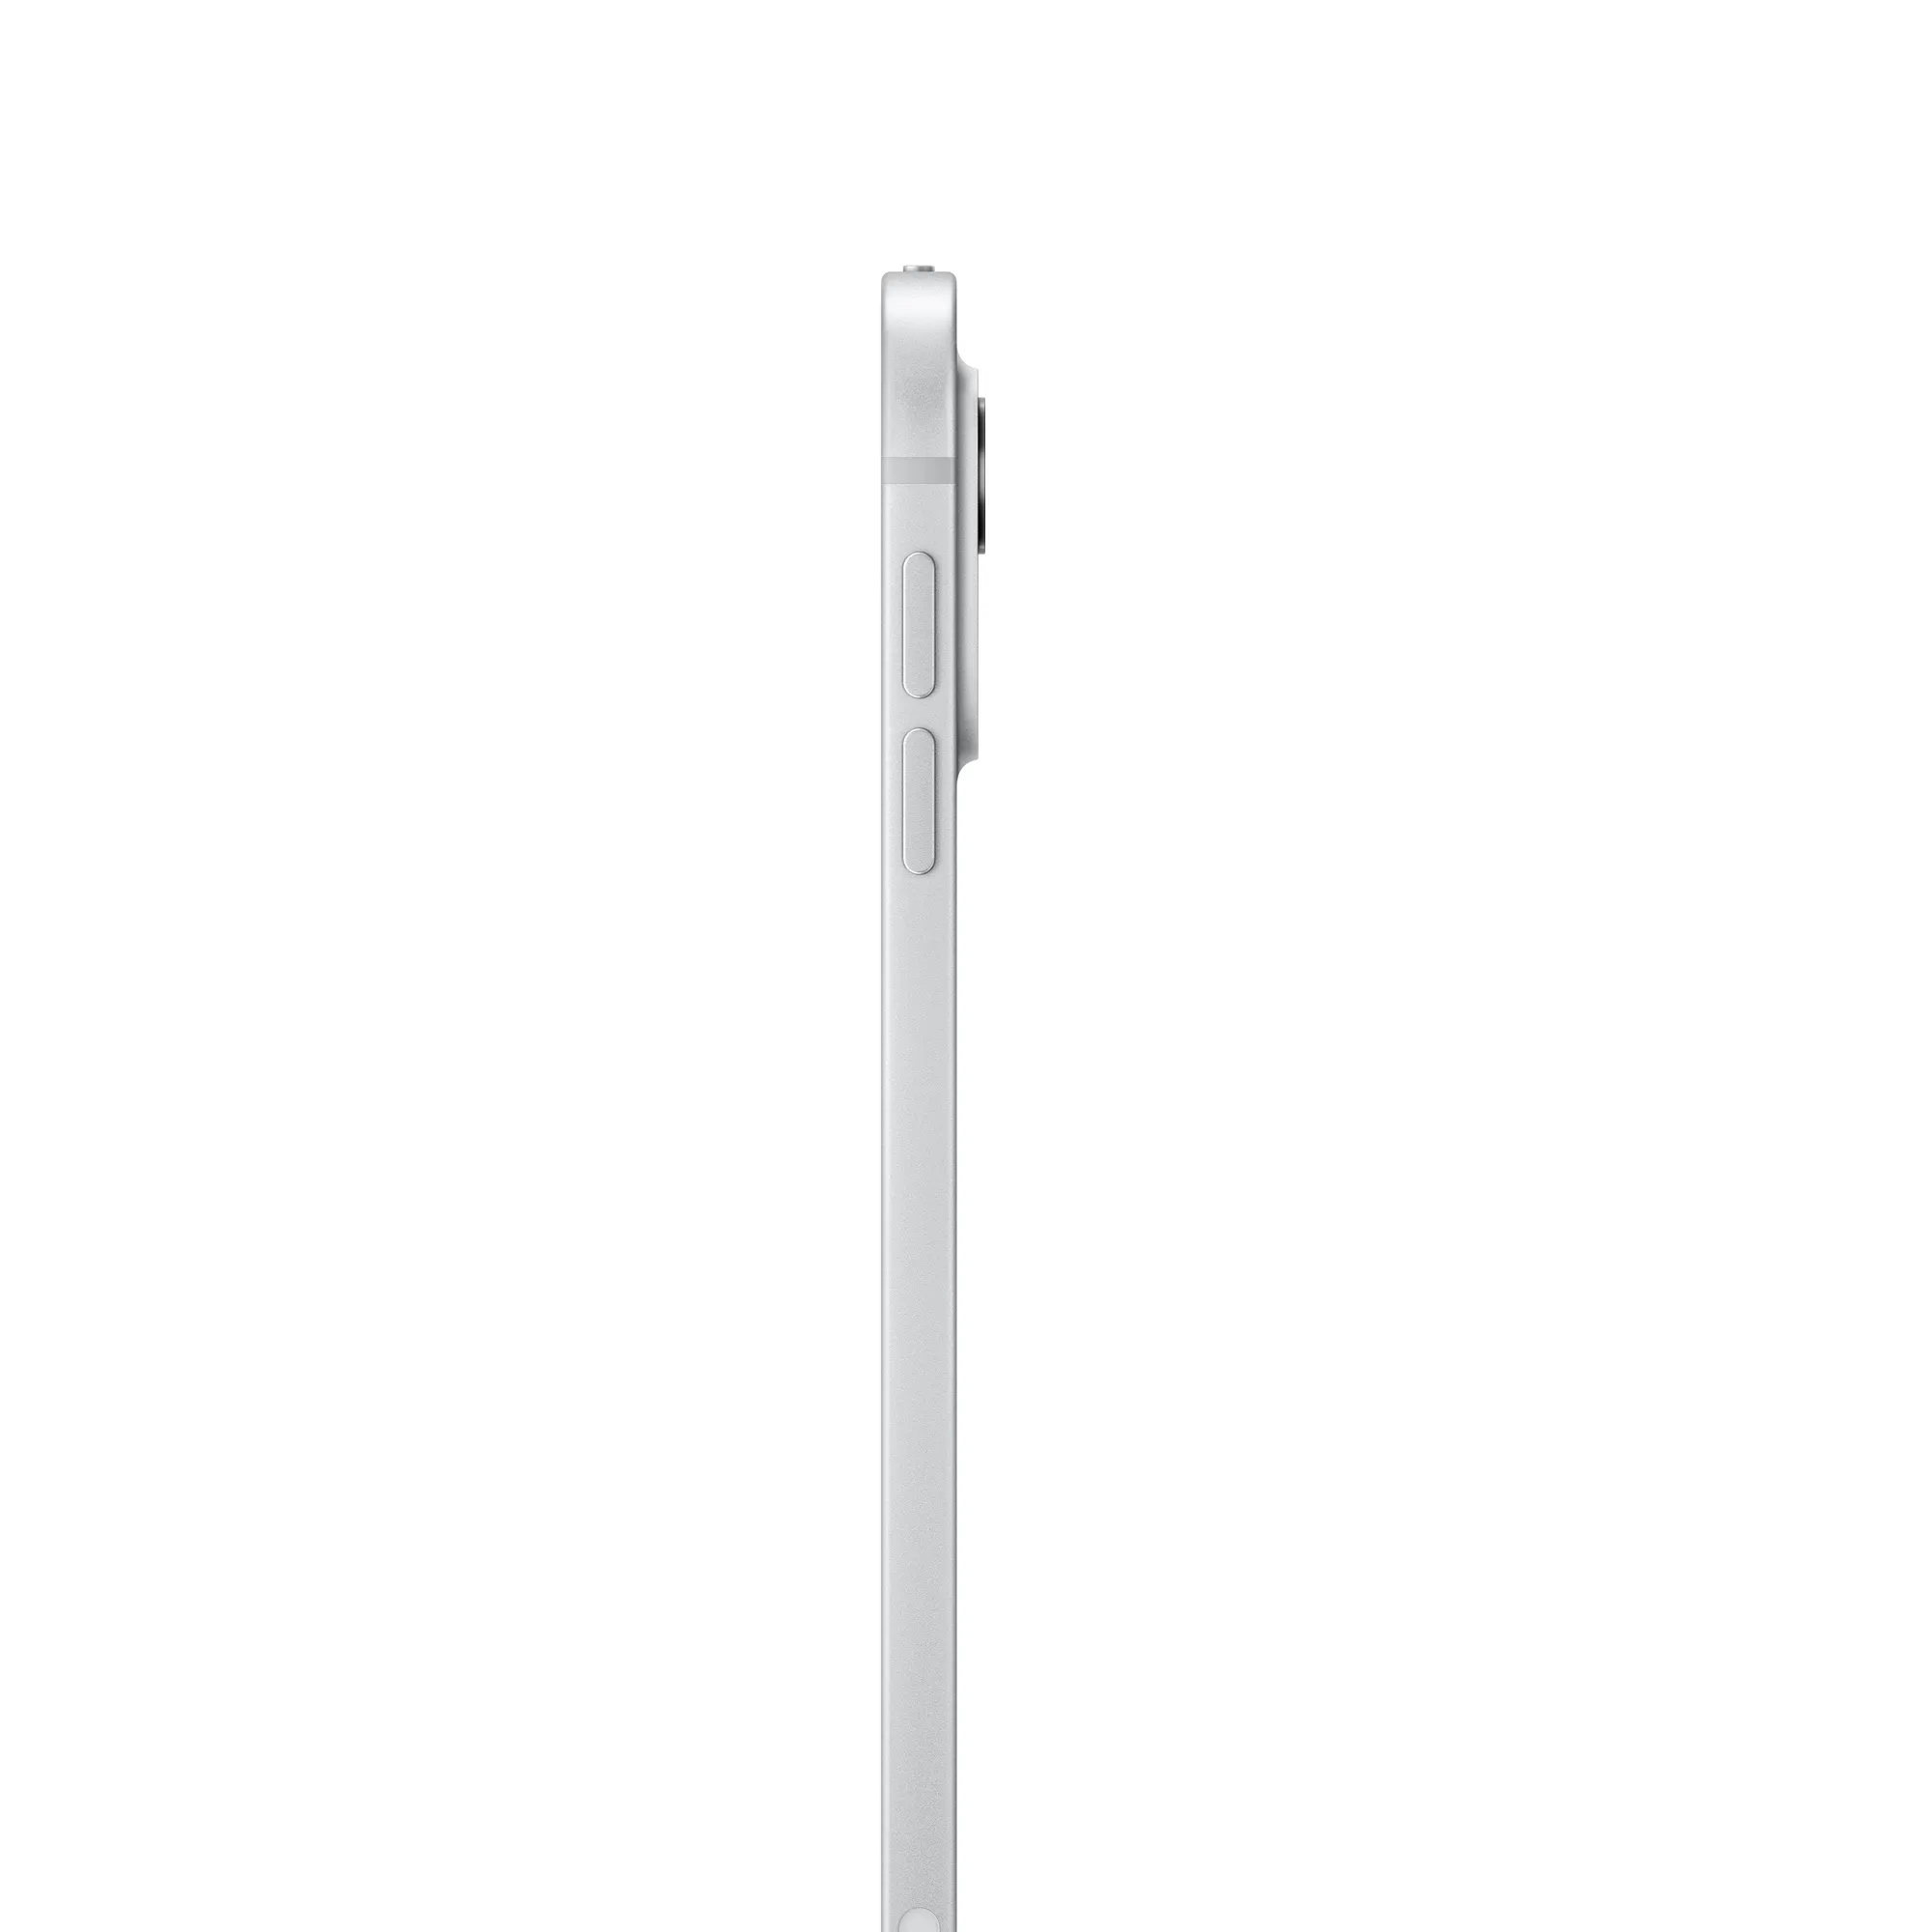 11 hüvelykes iPad Pro, Wi-Fi + Cellular, 1 TB, normál üveg – ezüst